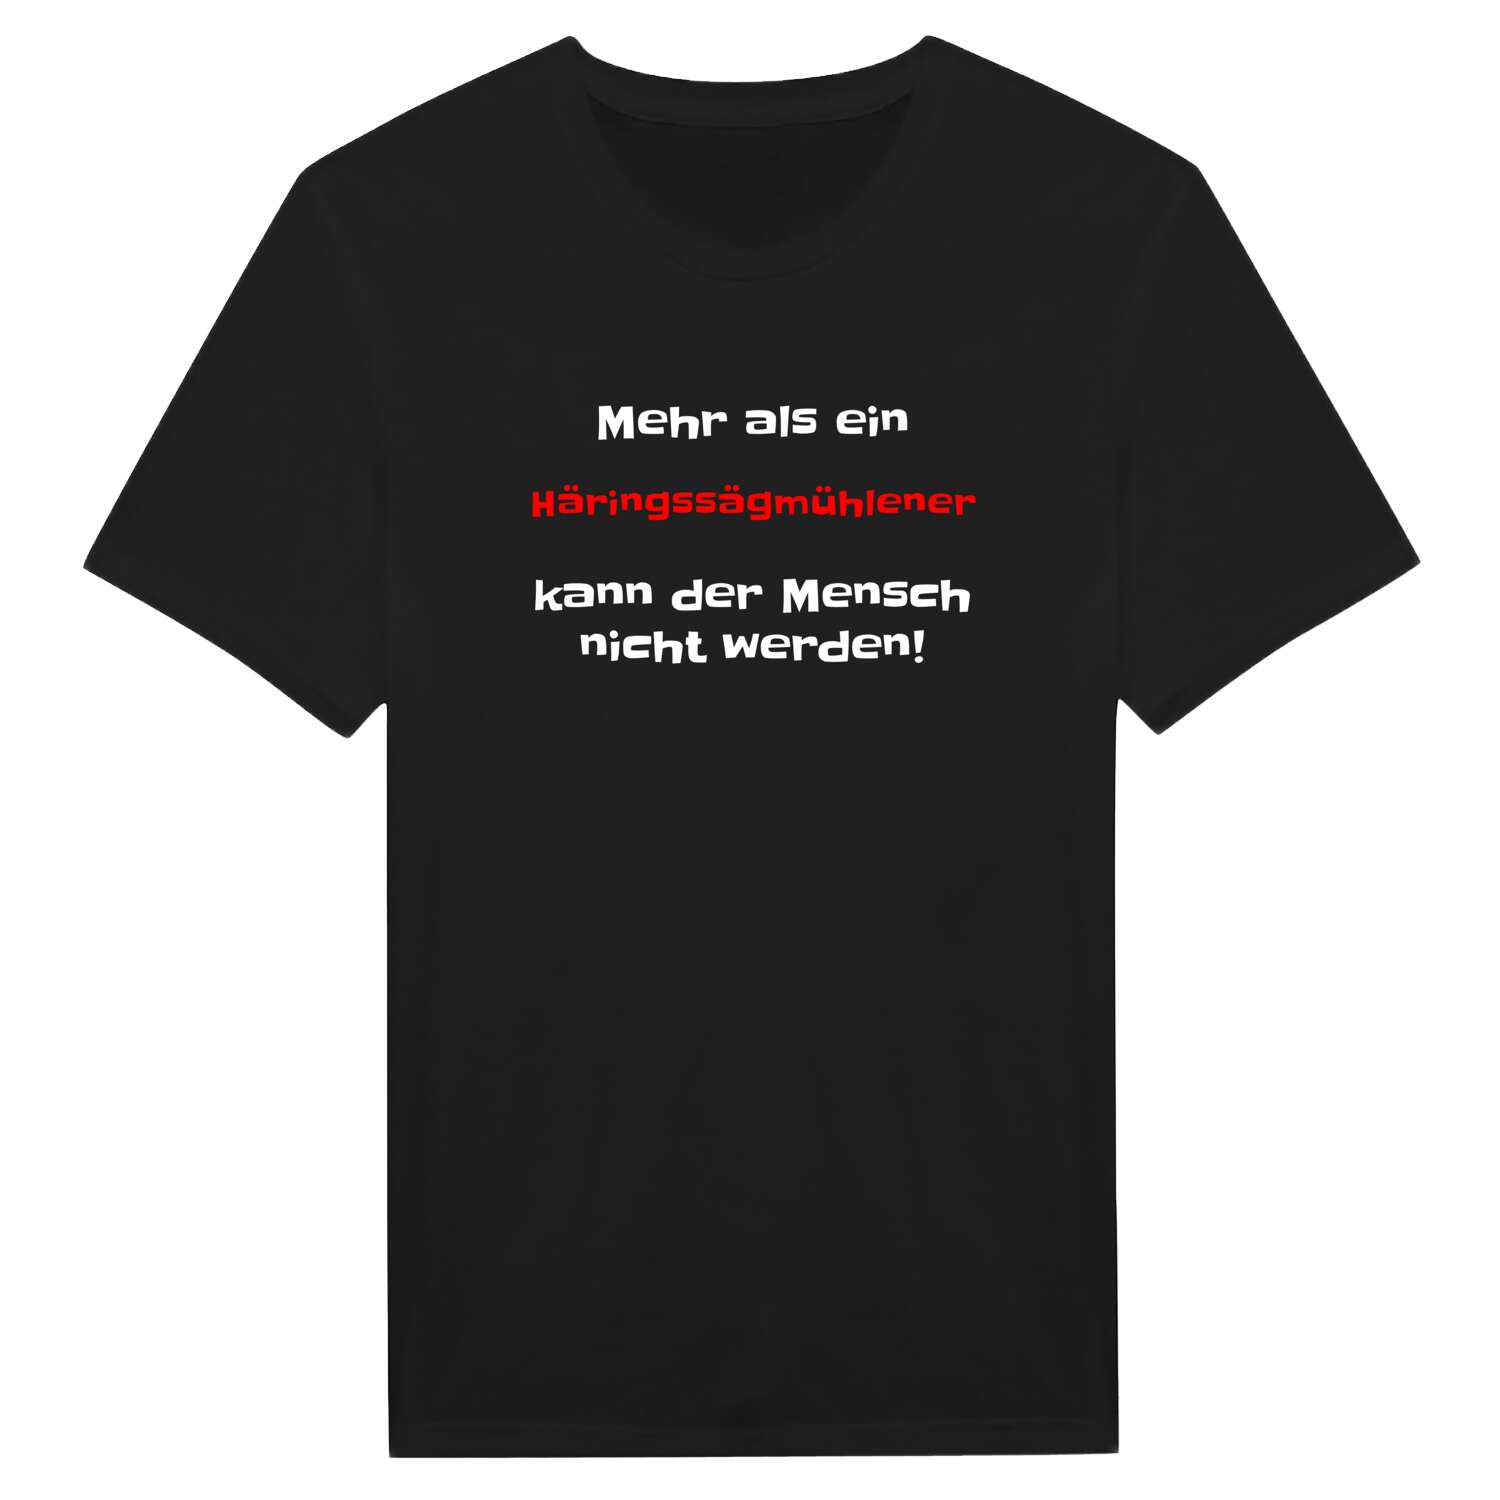 Häringssägmühle T-Shirt »Mehr als ein«